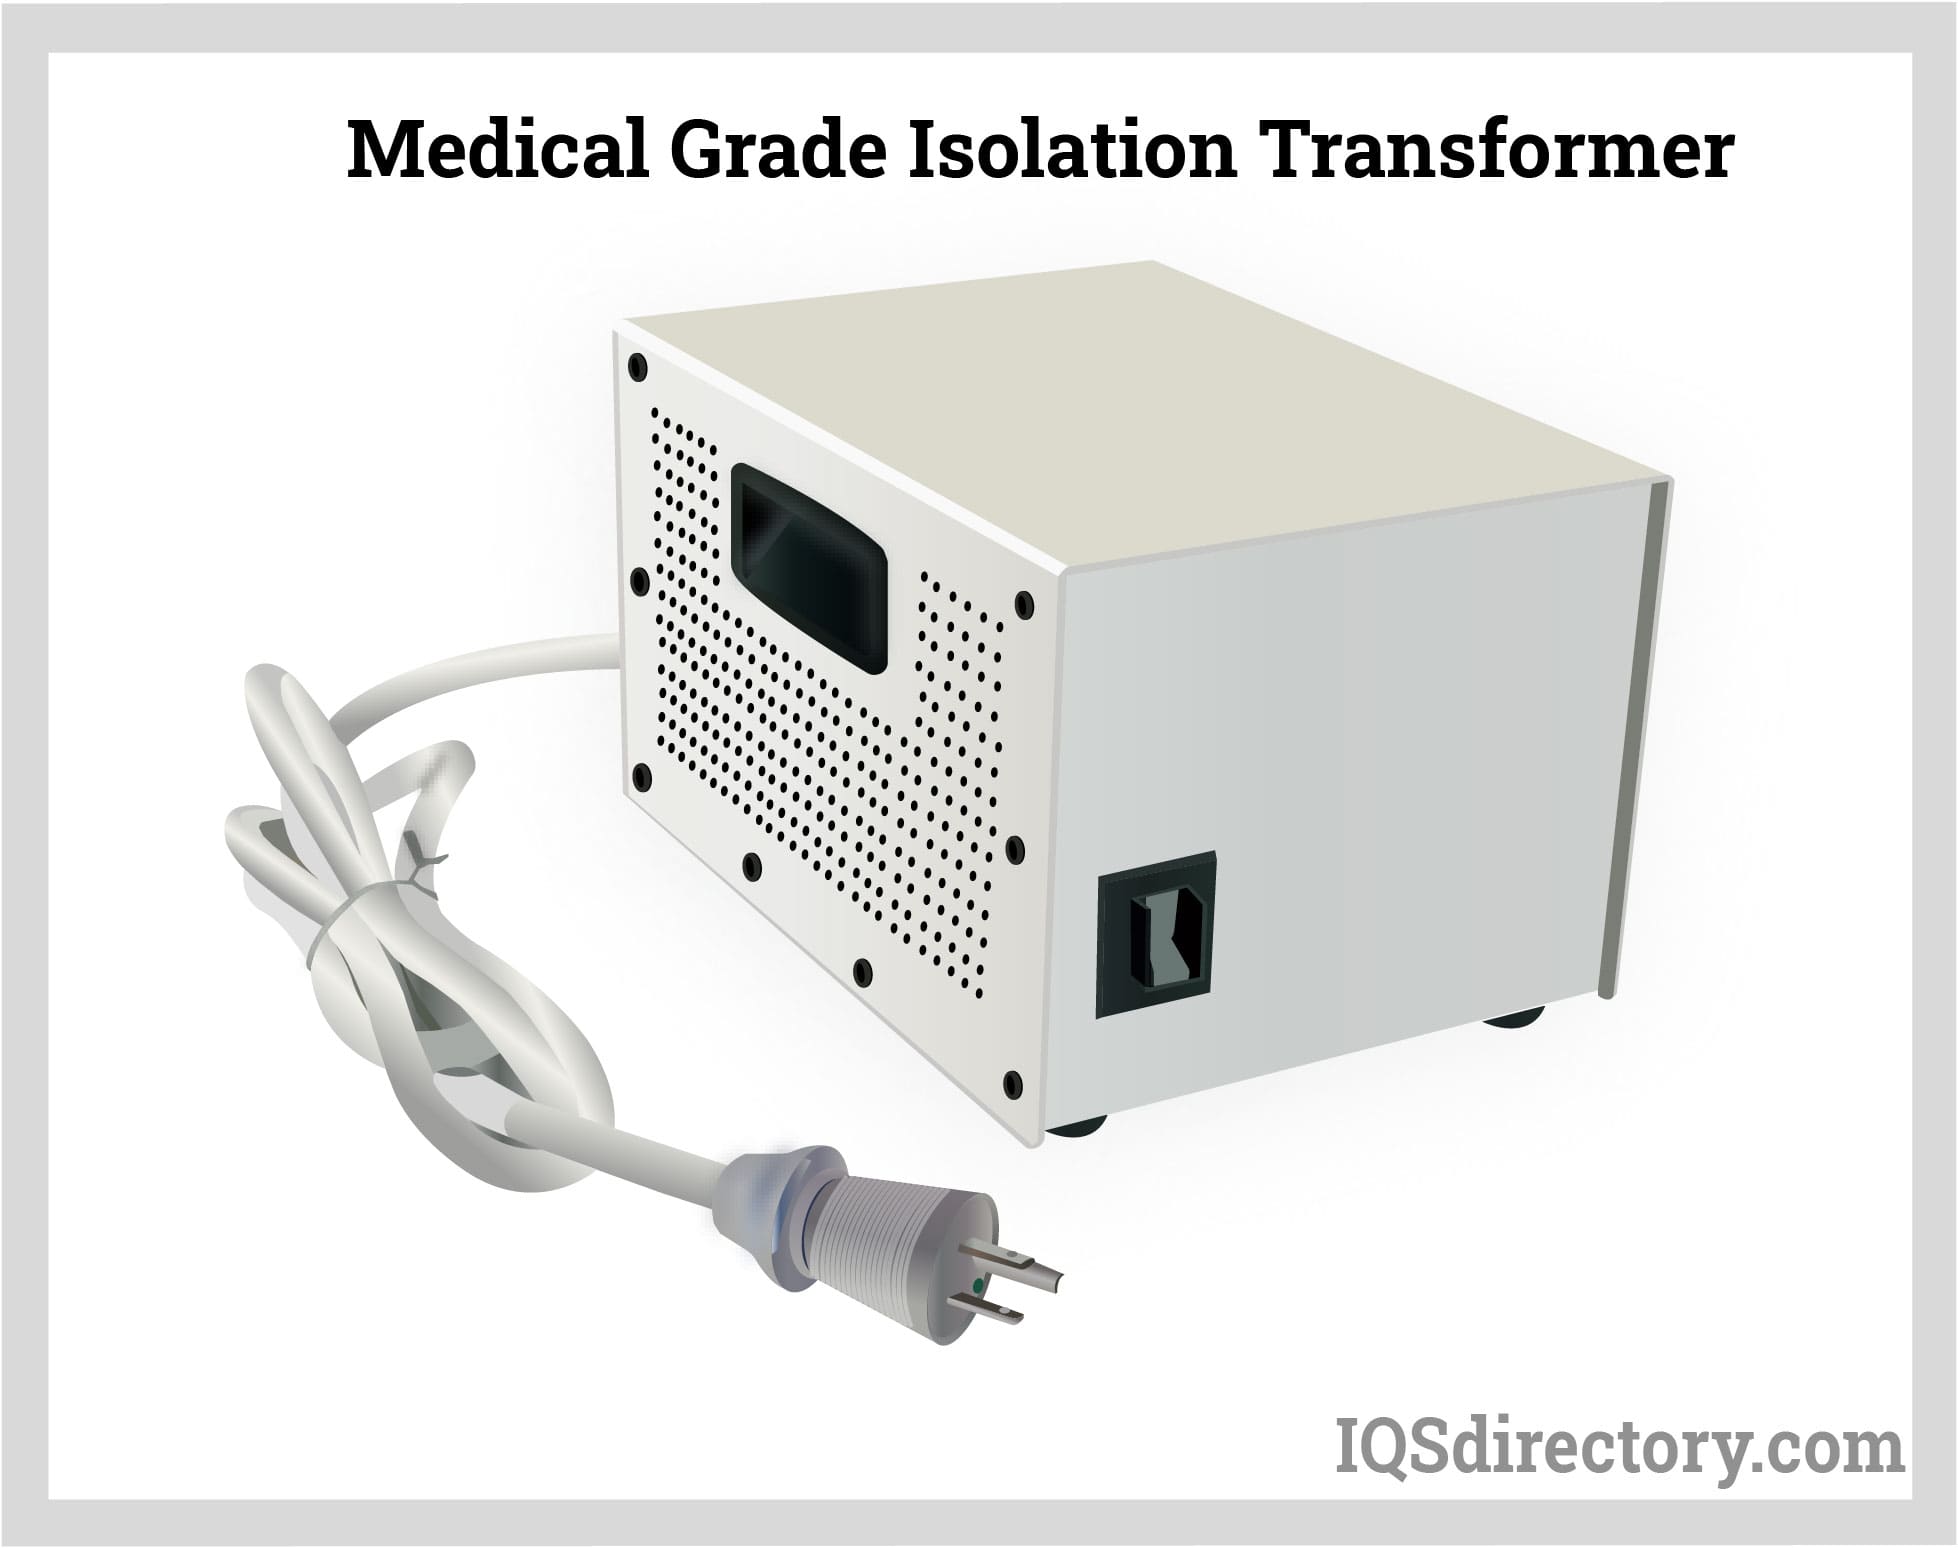 Medical Grade Isolation Transformer